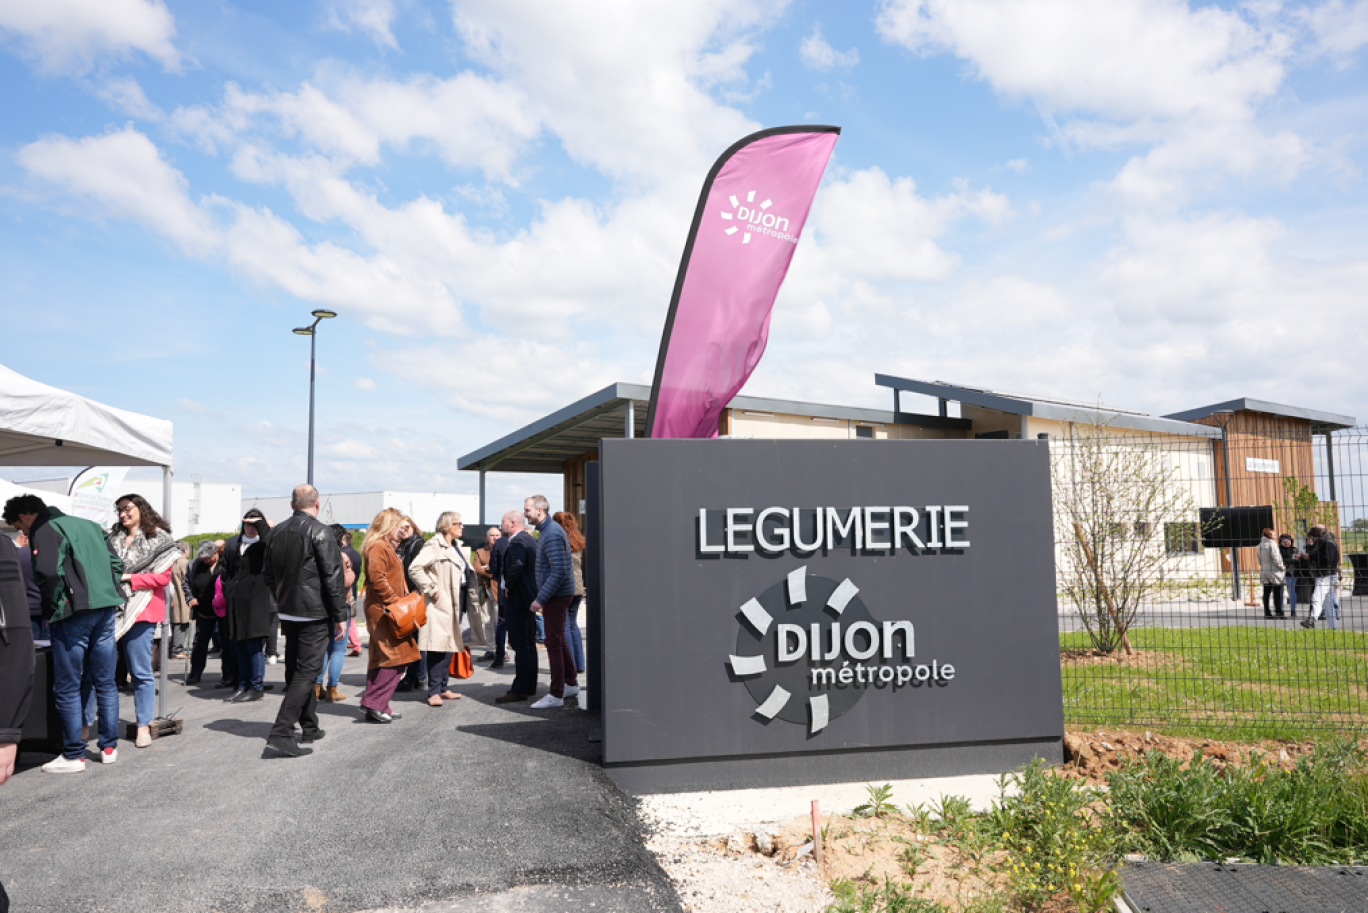 La nouvelle légumerie jouera un rôle majeur dans la stratégie de transition alimentaire de Dijon Métropole. (©Dijon Métropole)